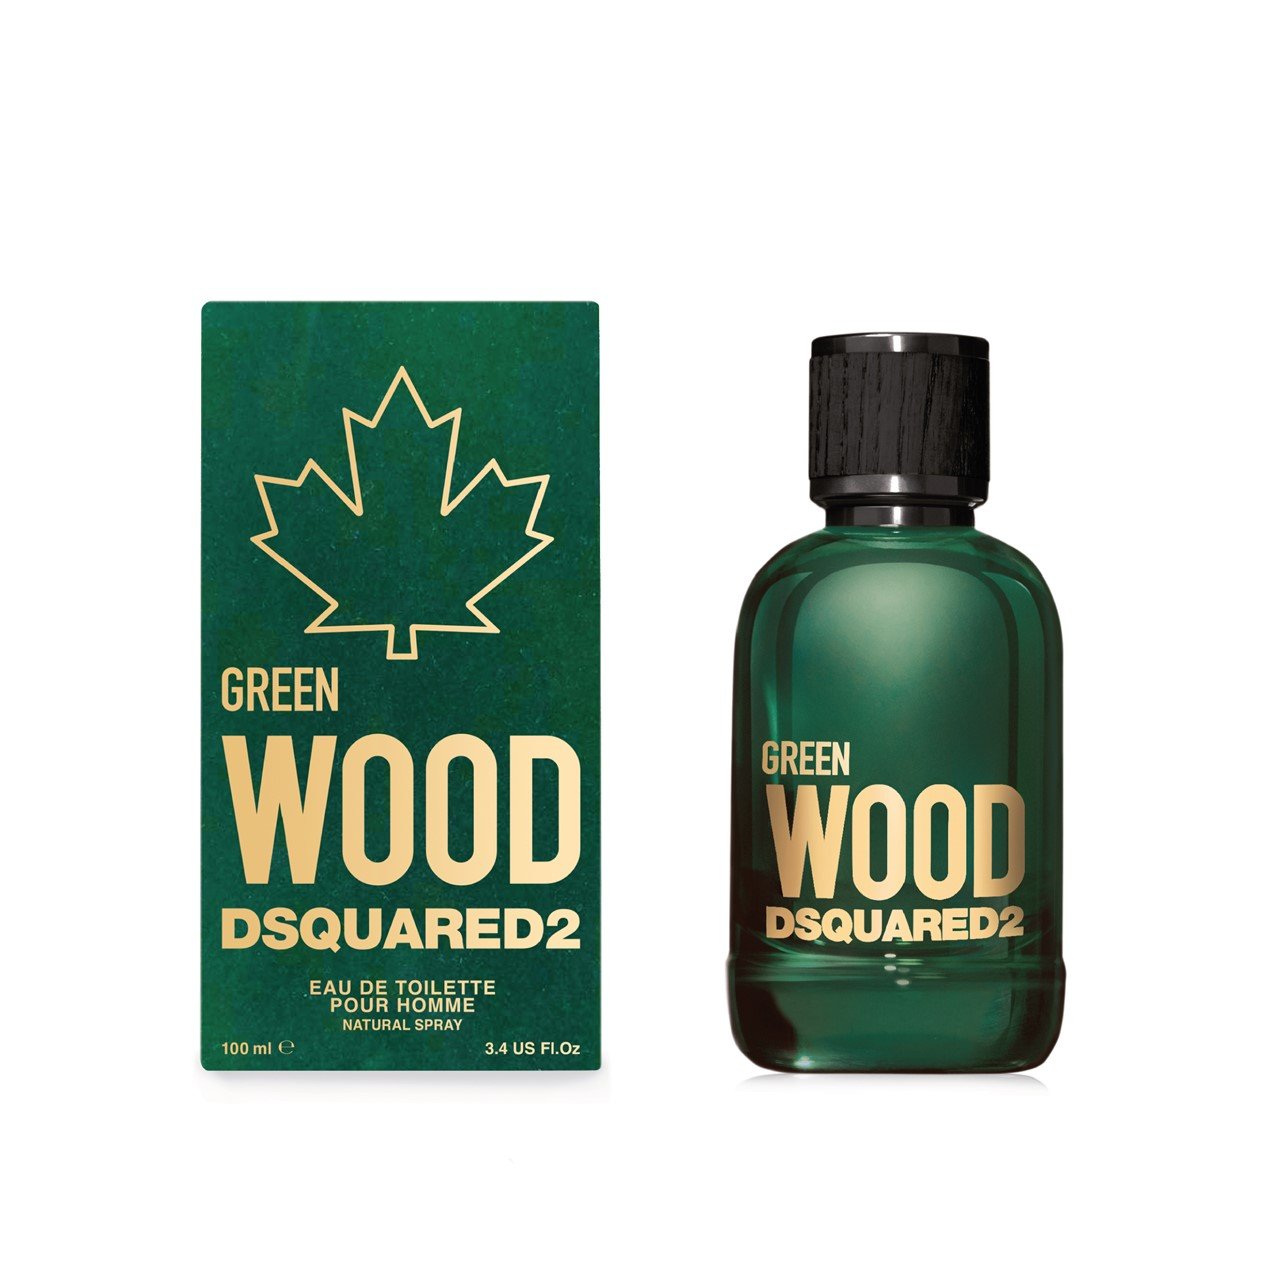 Dsquared2 Green Wood Eau de Toilette 100ml (3.4fl oz)